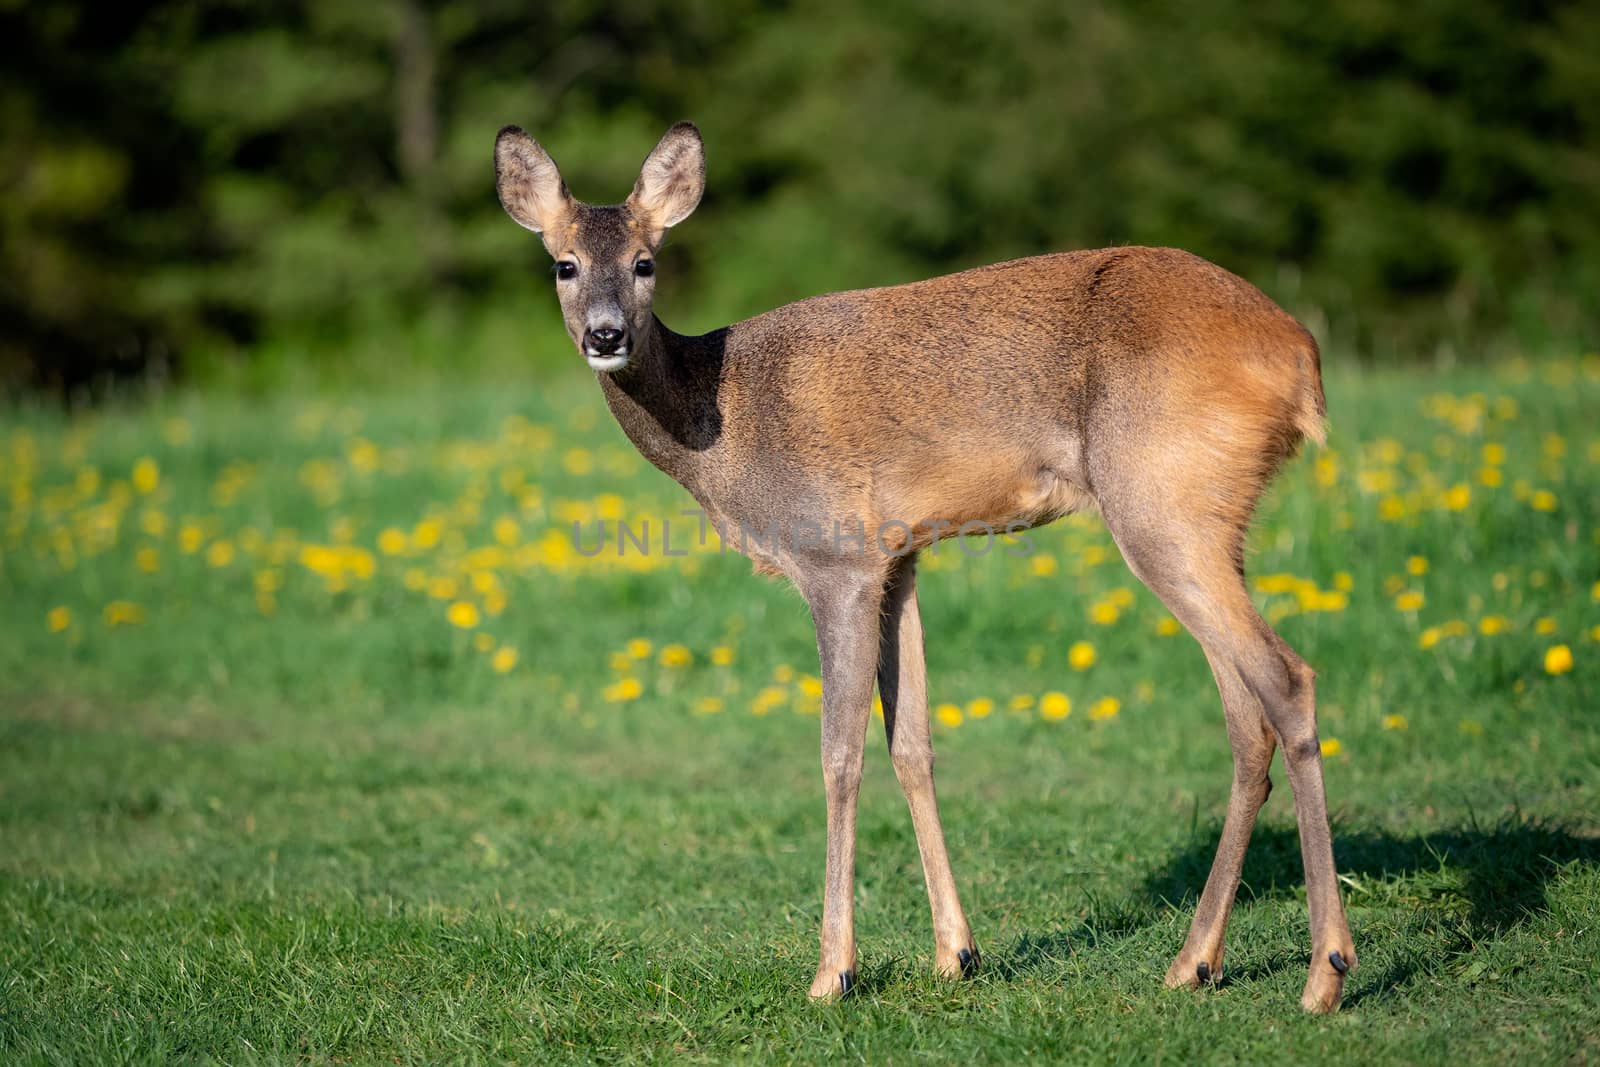 Roe deer in grass, Capreolus capreolus. Wild roe deer in spring  by xtrekx